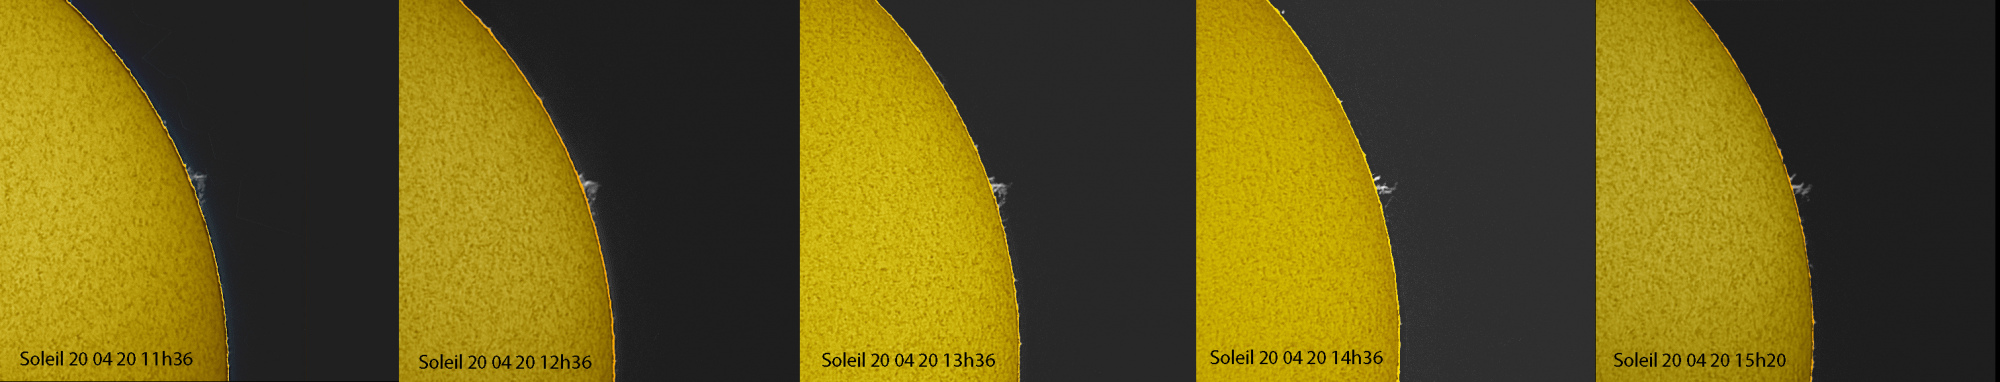 Soleil  20-04-20 11-36 a 15h20.jpg